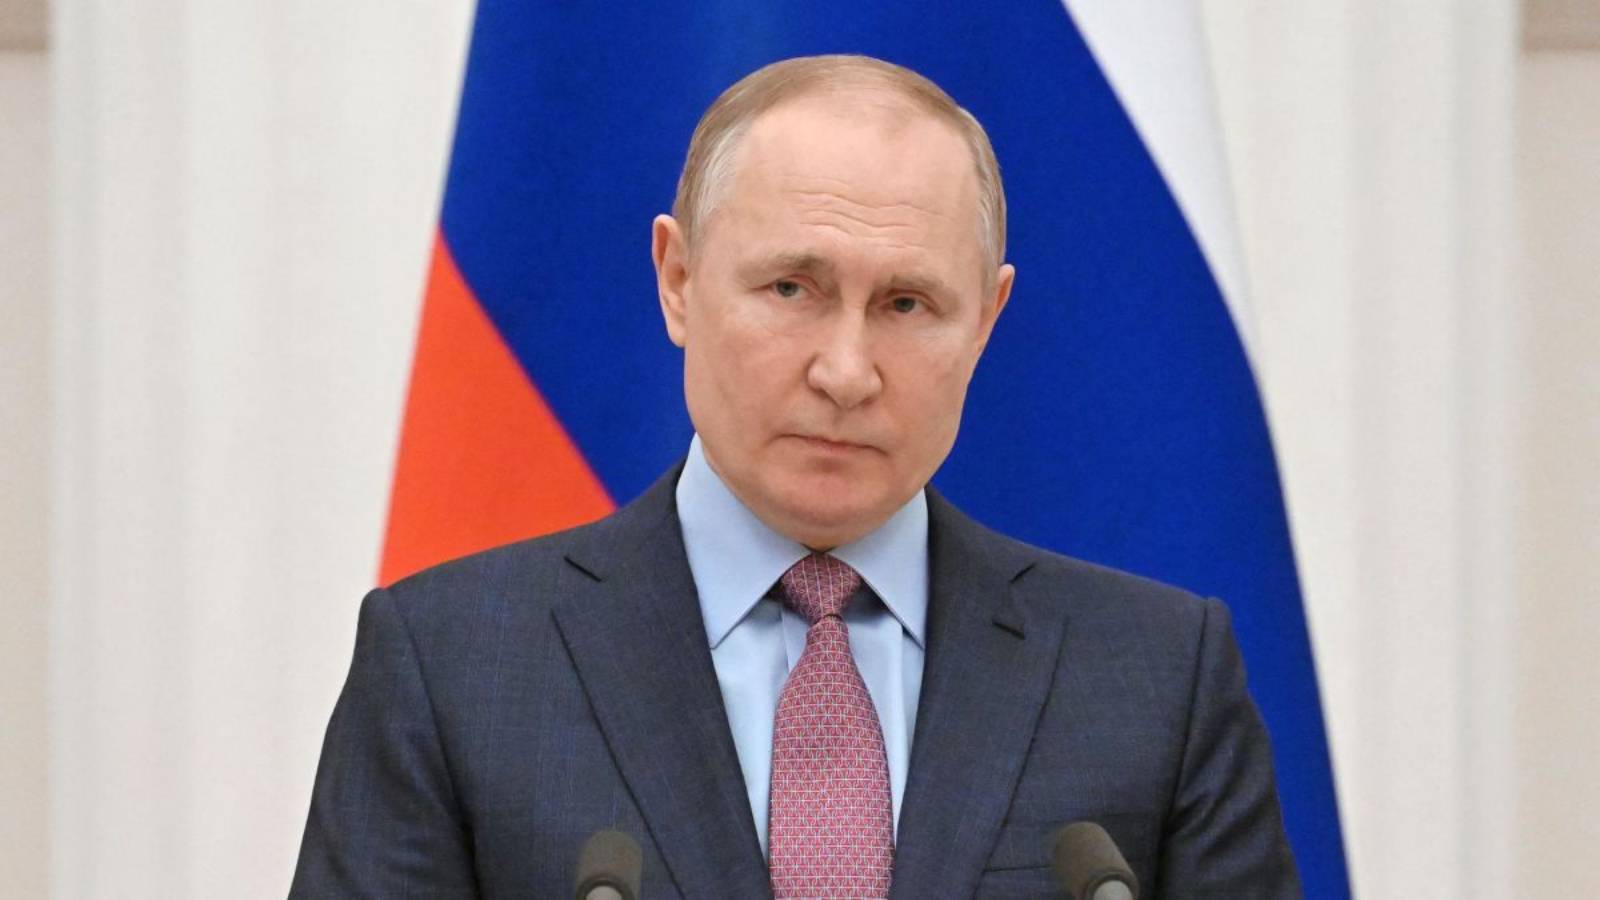 Vladimir Putin päättää jatkaa venäläisten mobilisointia Ukrainan sotaan